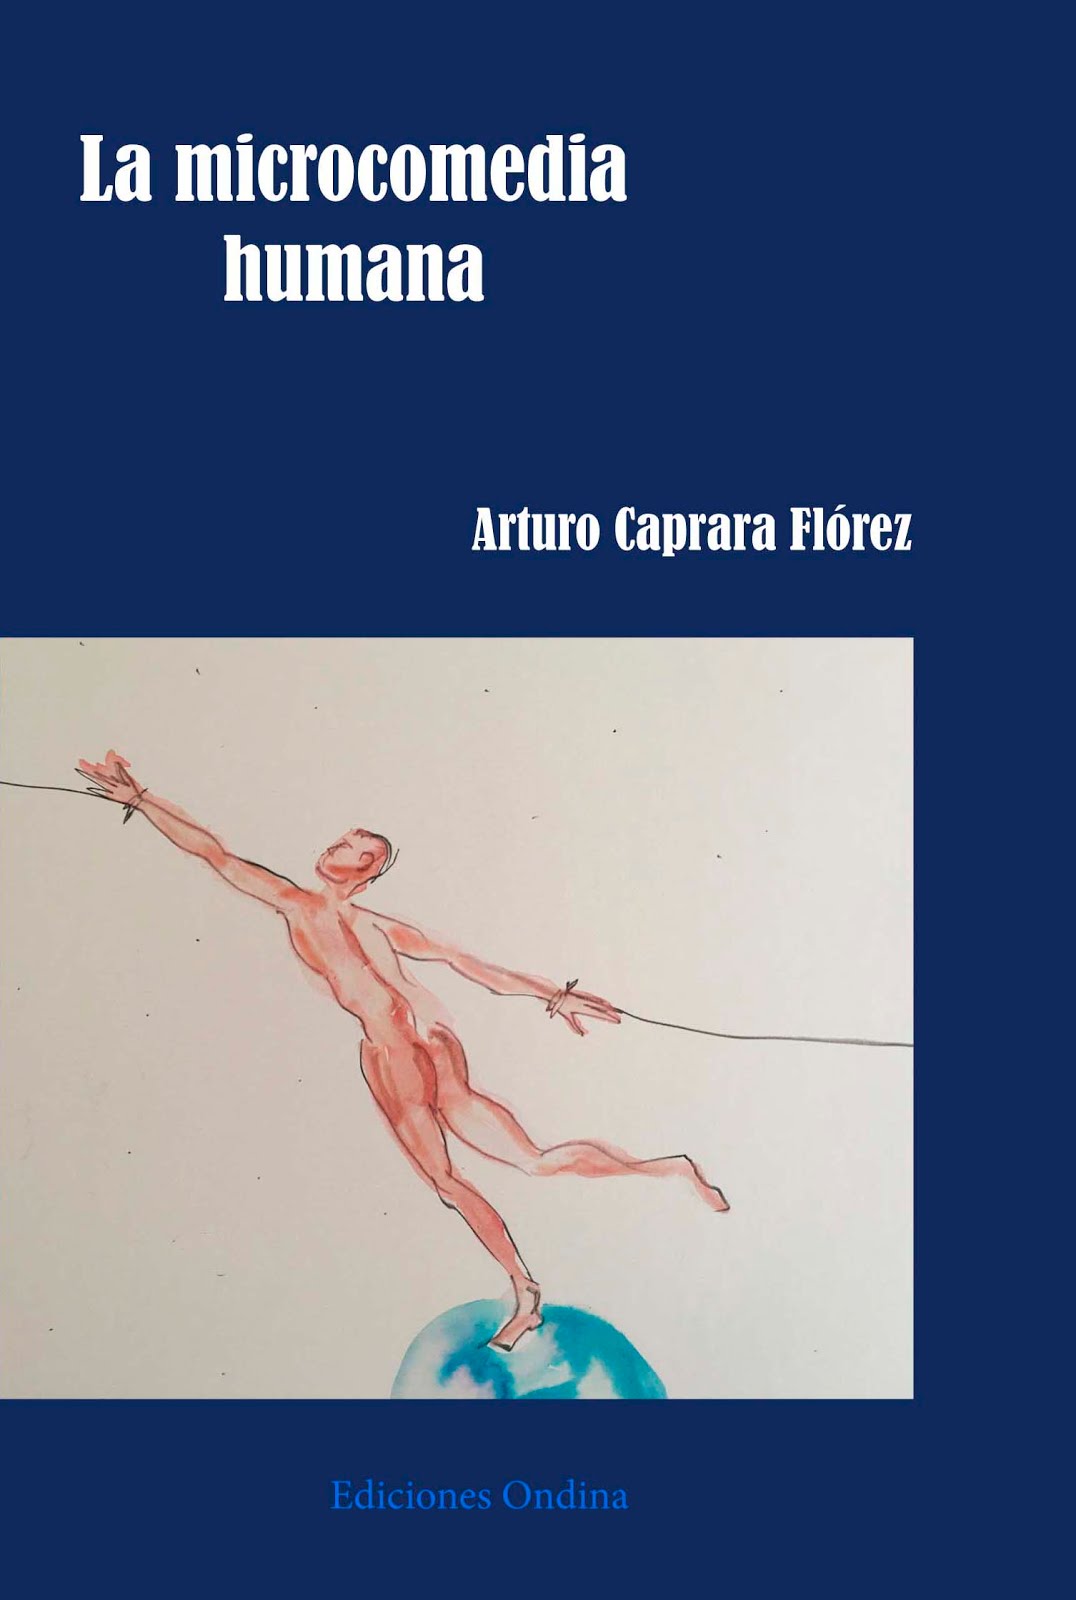 LA MICROCOMEDIA HUMANA de Arturo Caprara